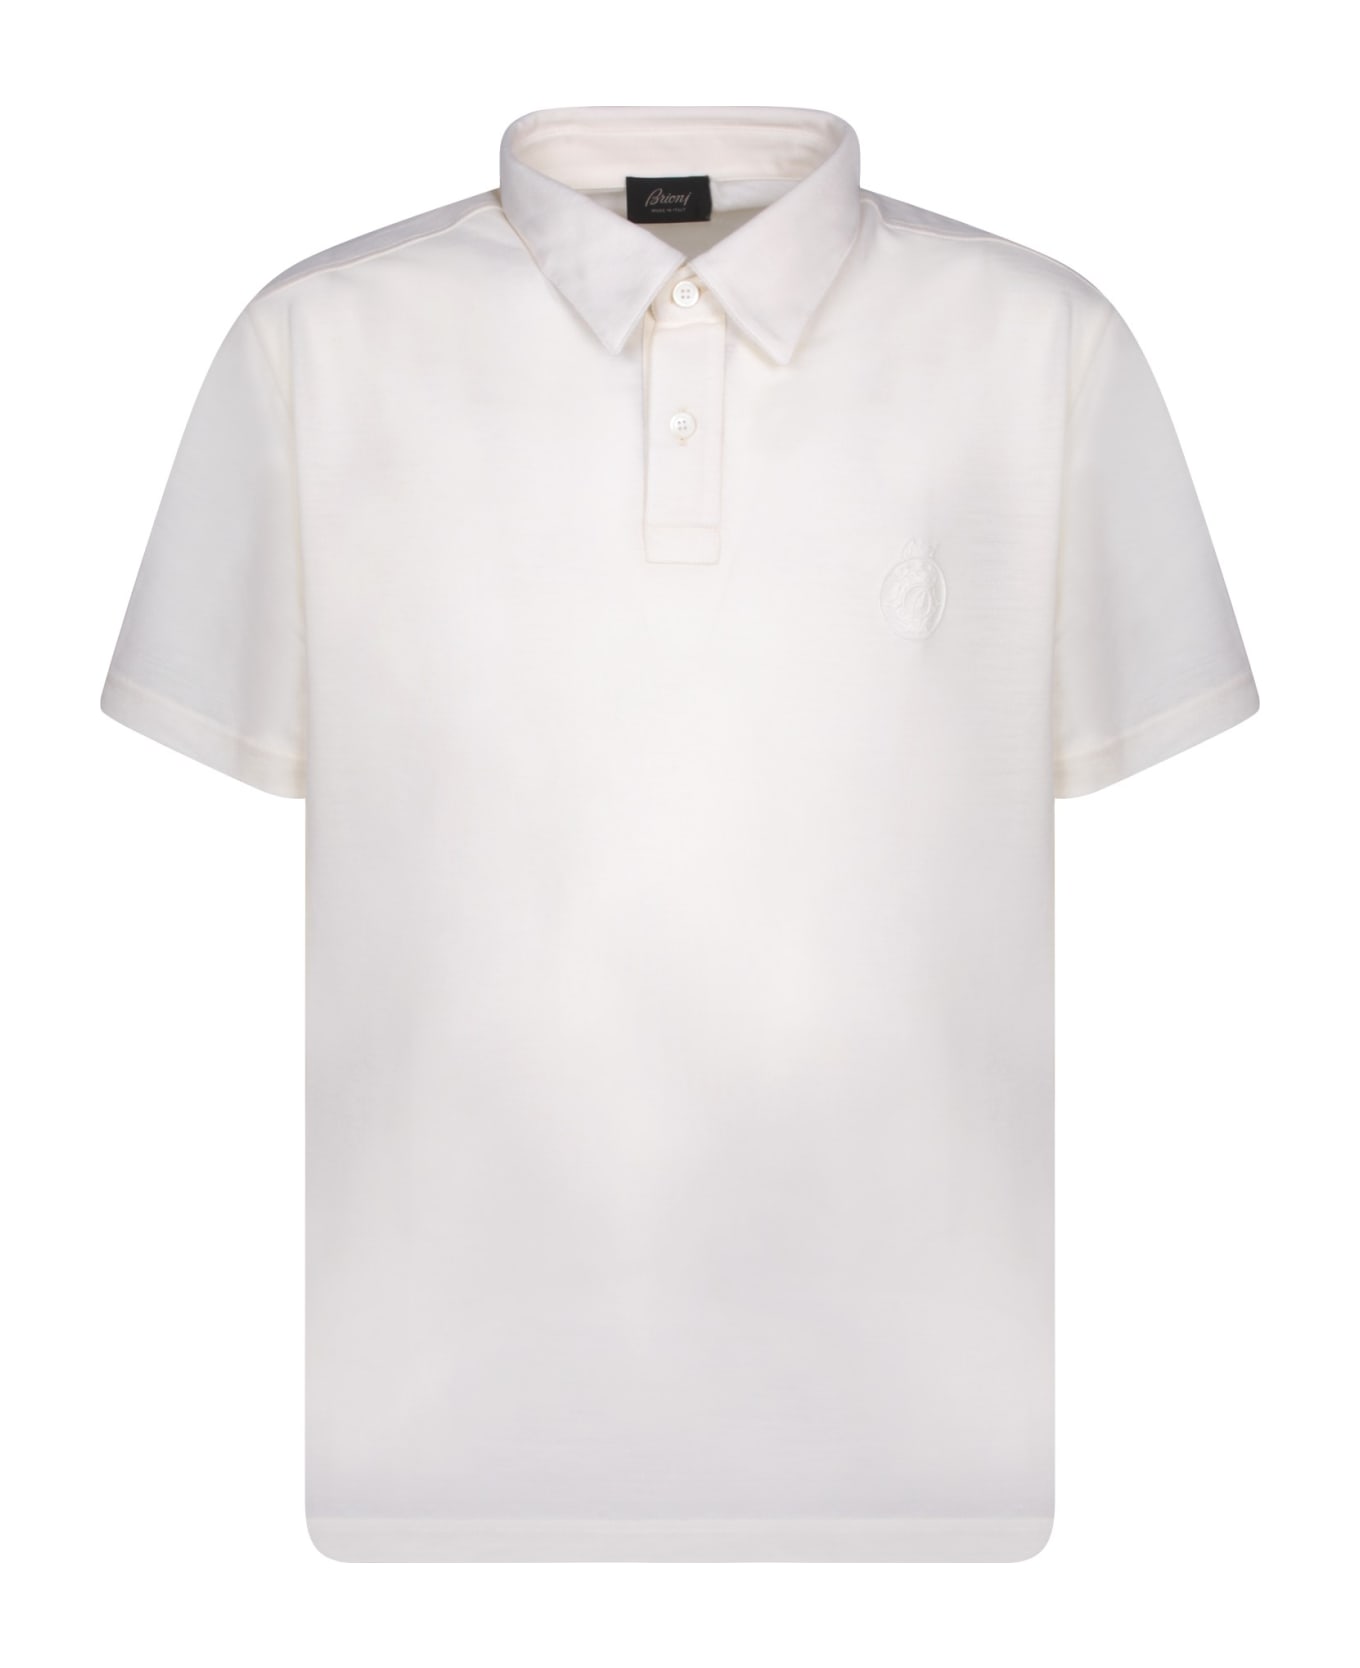 Brioni Golf Logo White Polo Shirt - White